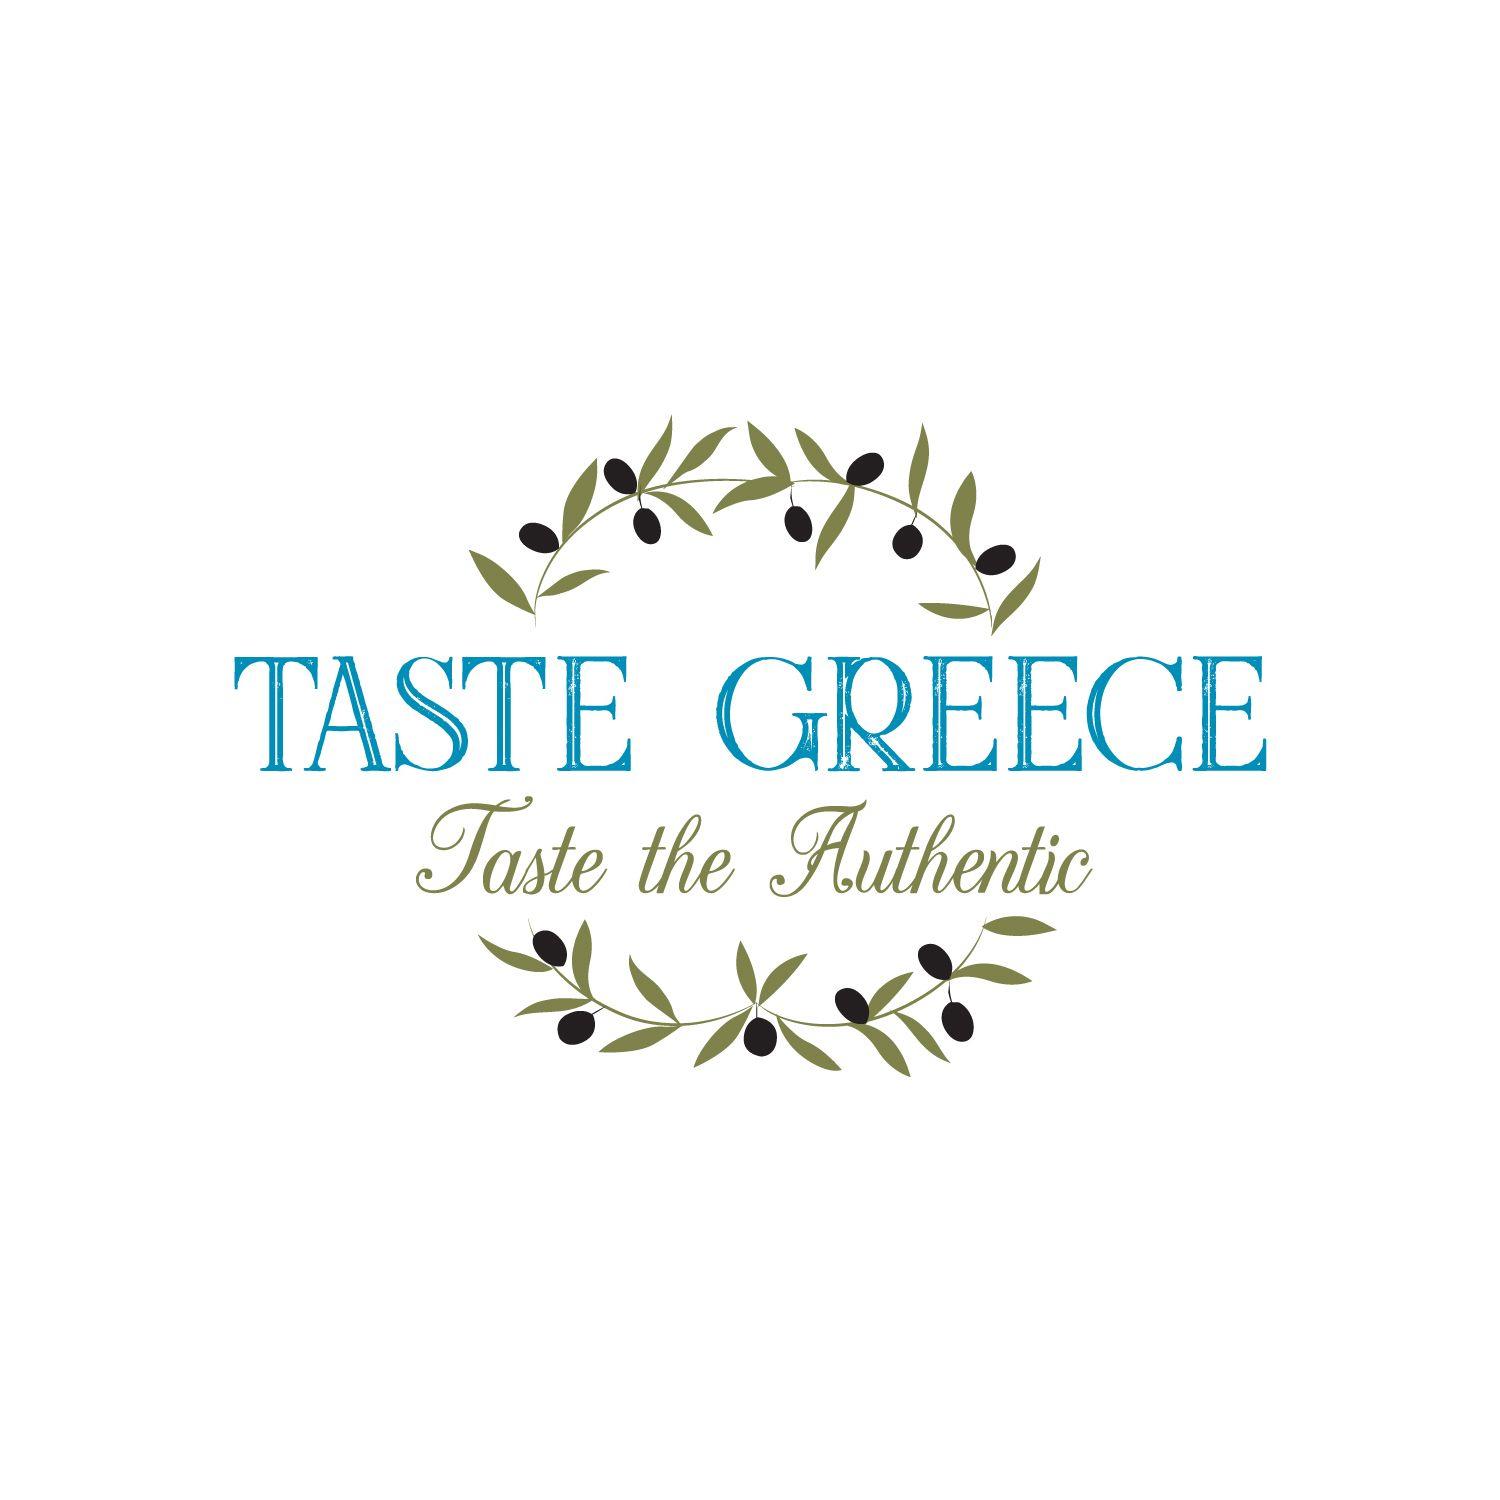 Greece Logo - Modern, Professional Logo Design for Taste Greece - Taste the ...